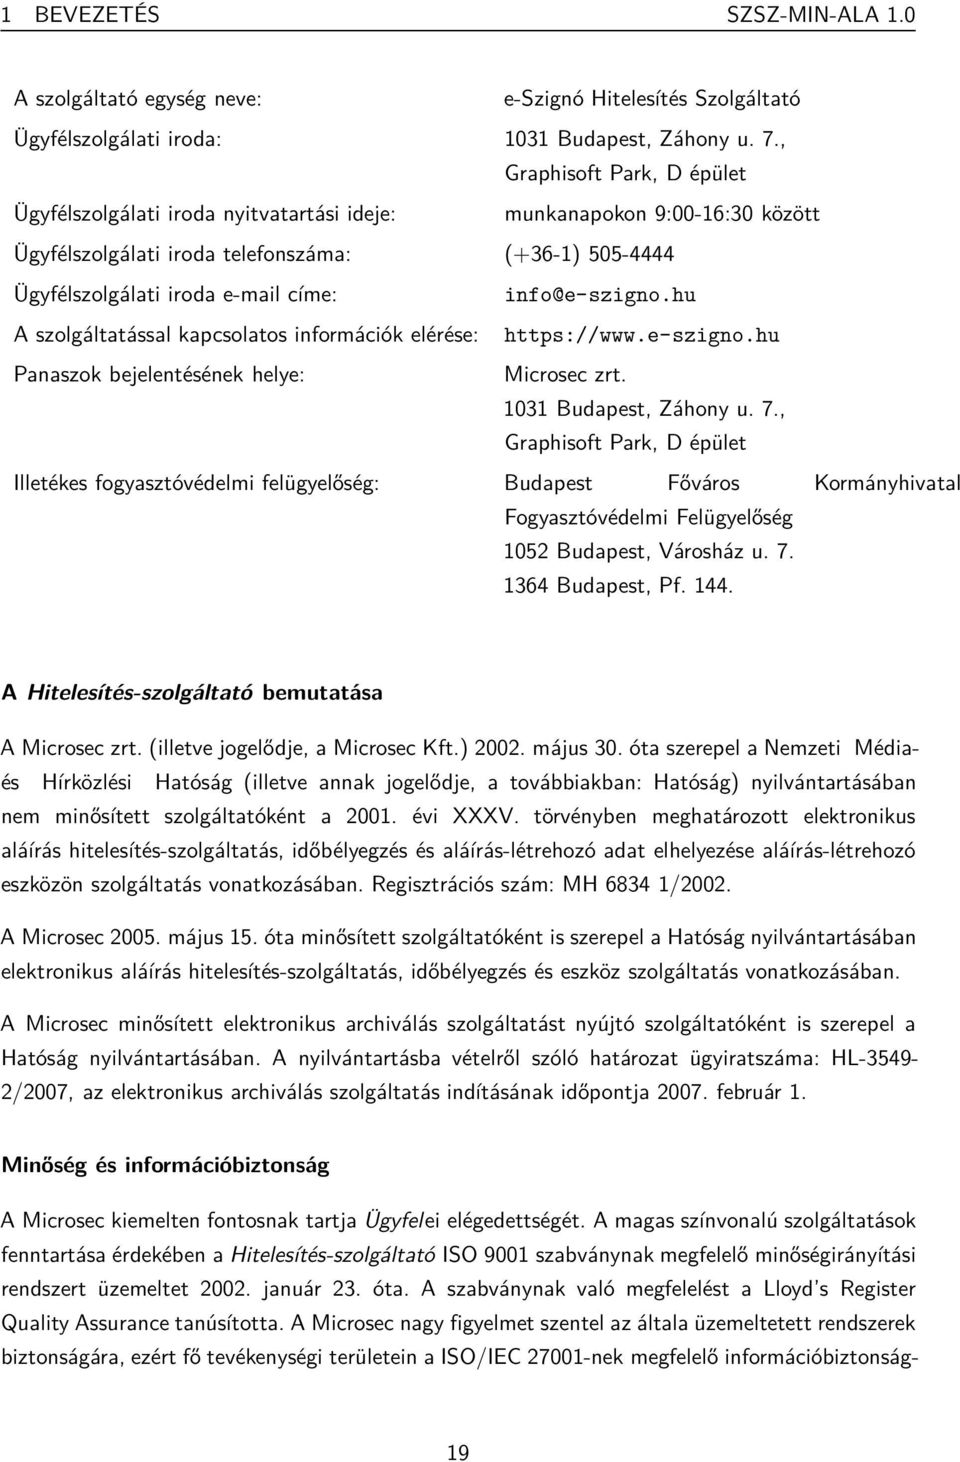 info@e-szigno.hu A szolgáltatással kapcsolatos információk elérése: https://www.e-szigno.hu Panaszok bejelentésének helye: Microsec zrt. 1031 Budapest, Záhony u. 7.